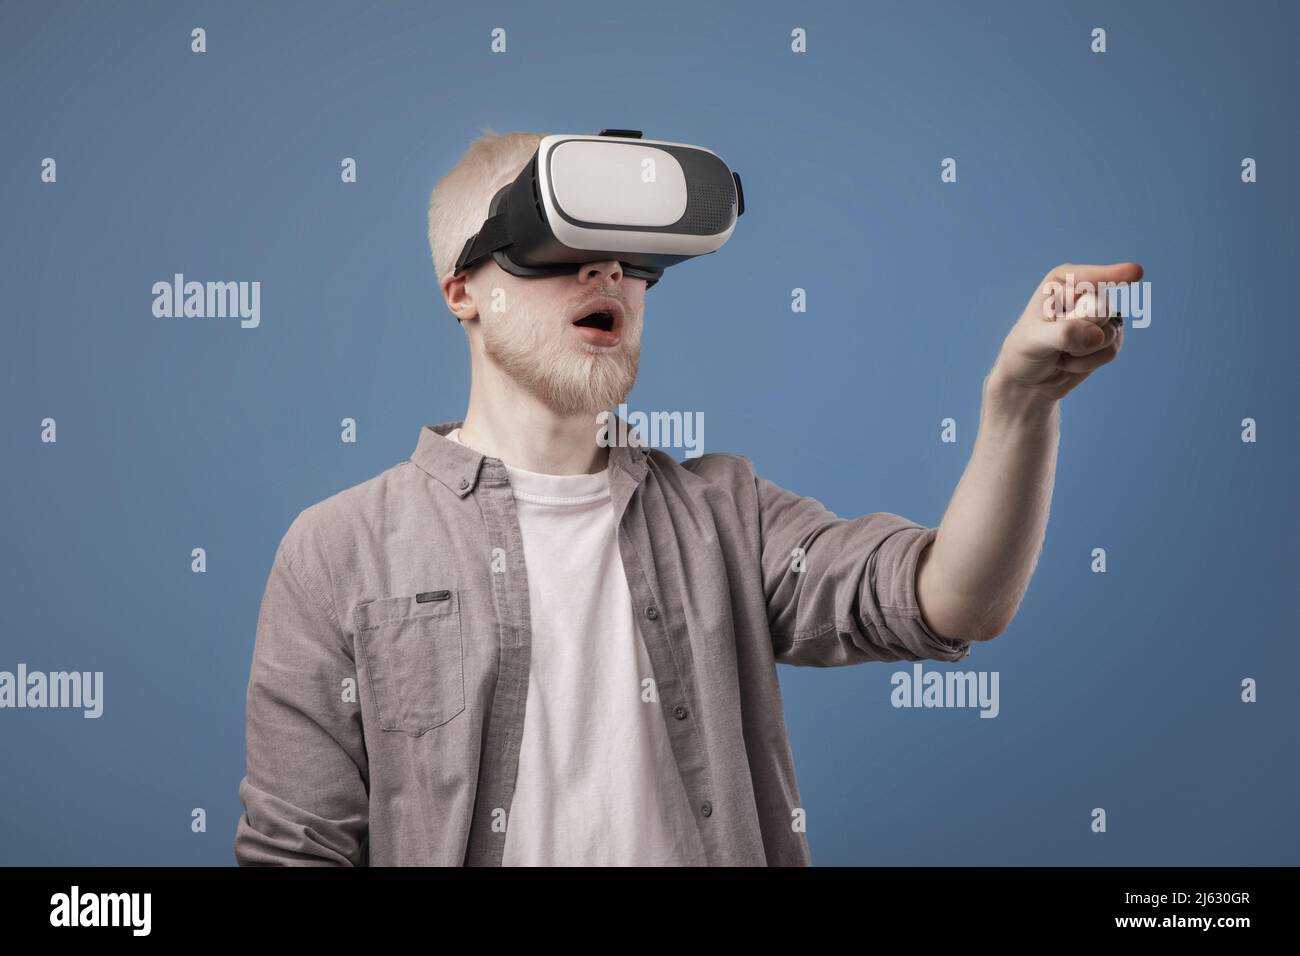 Virtuelle Welt in 3D Simulation. Aufgeregt Albino Kerl in vr Brille spielen und versuchen, etwas zu berühren, blauer Hintergrund Stockfoto